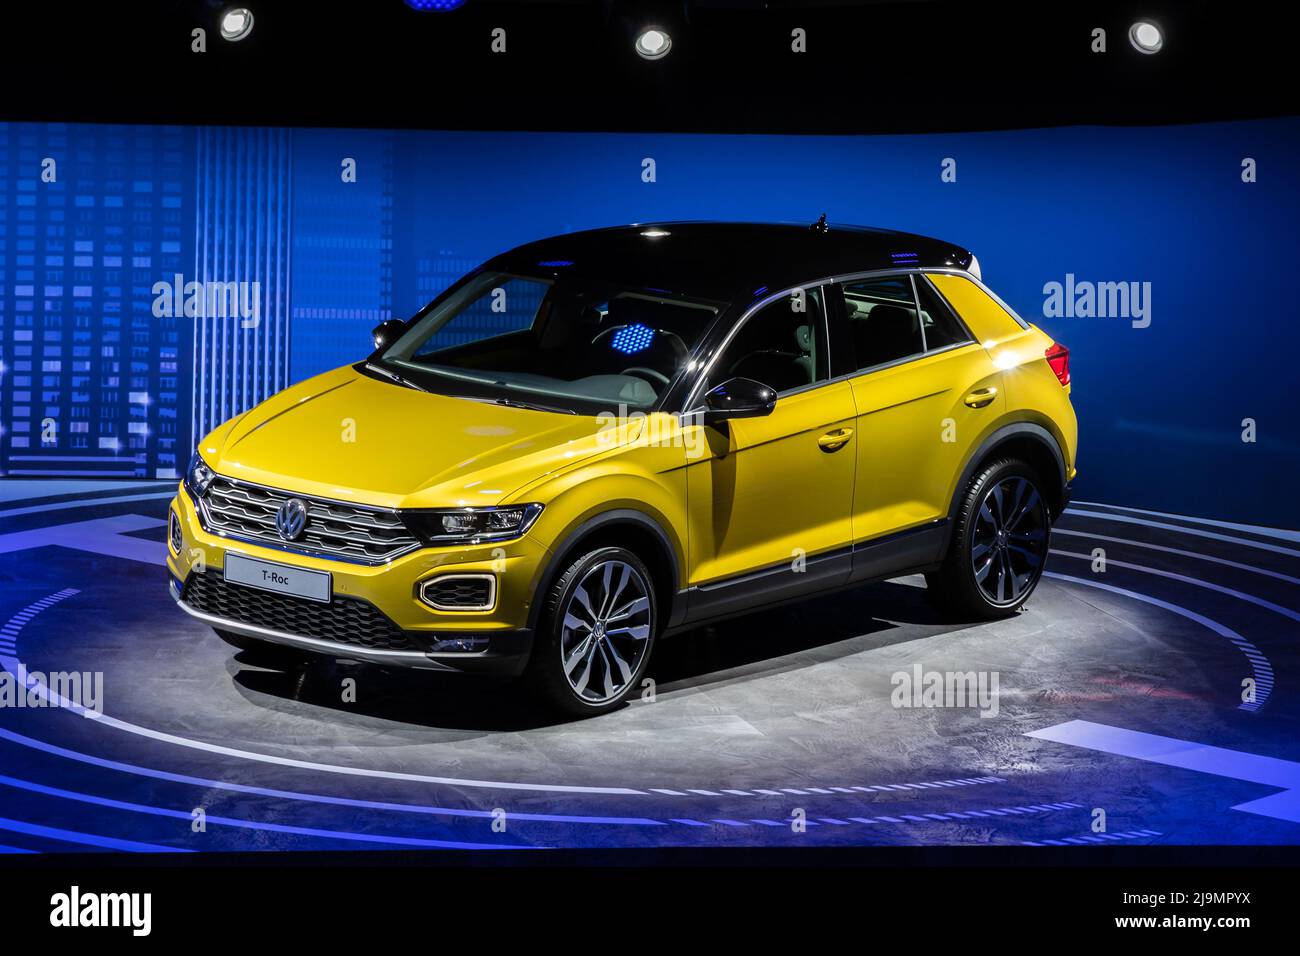 La voiture Volkswagen T-Roc a été présentée au salon de l'automobile IAA de Francfort. Allemagne - 12 septembre 2017. Banque D'Images